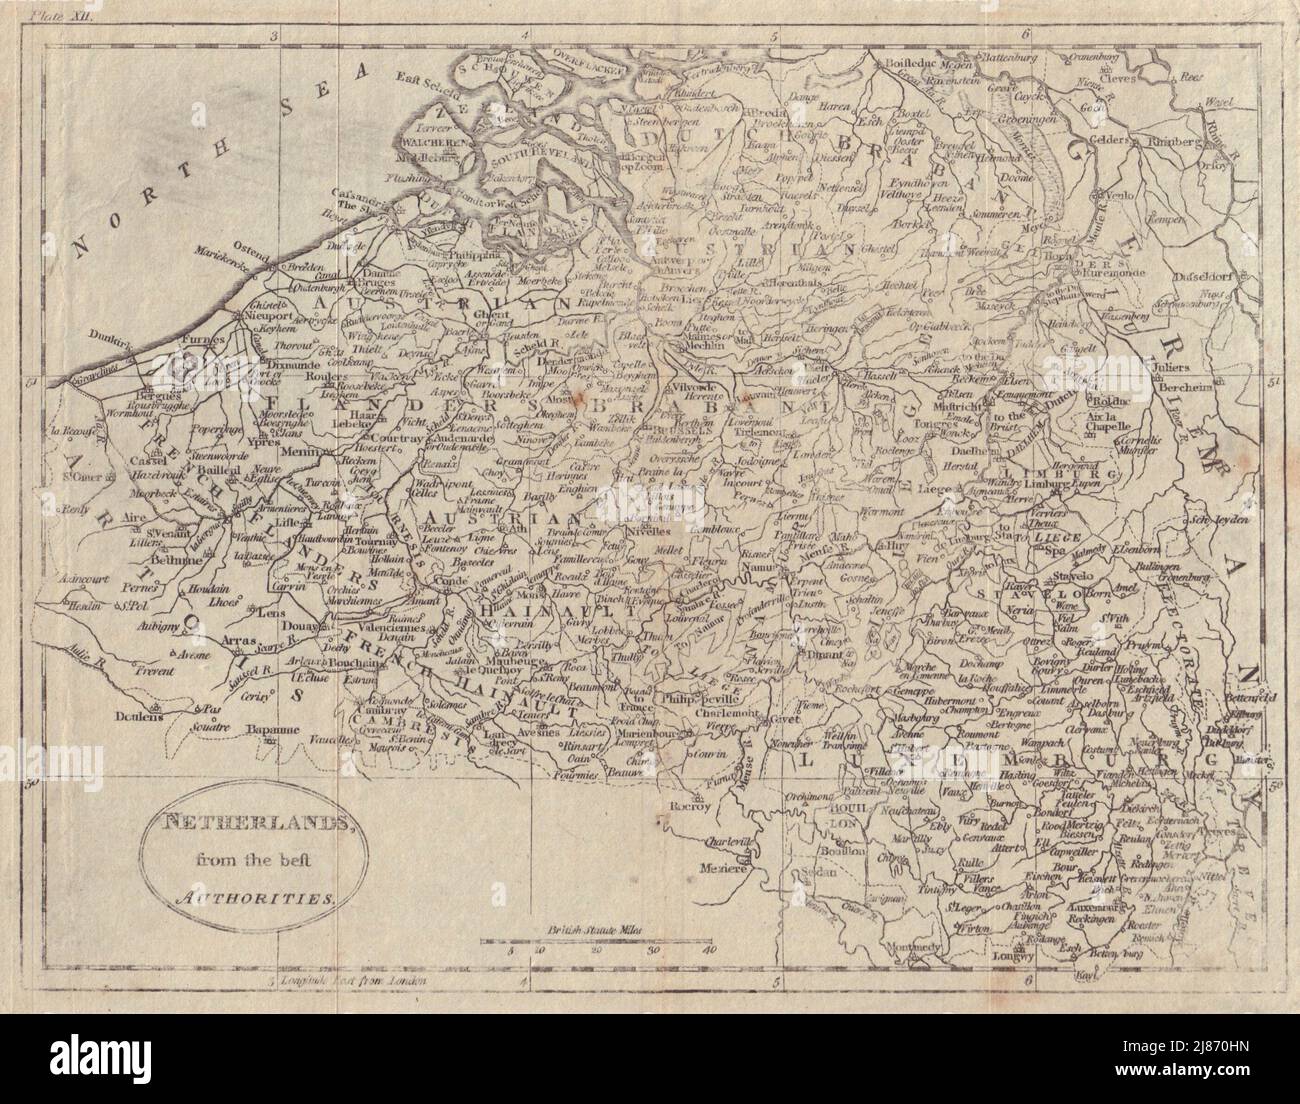 Belgien Und Luxemburg. „Niederlande von den besten Behörden“. GUTHRIE 1796 Karte Stockfoto